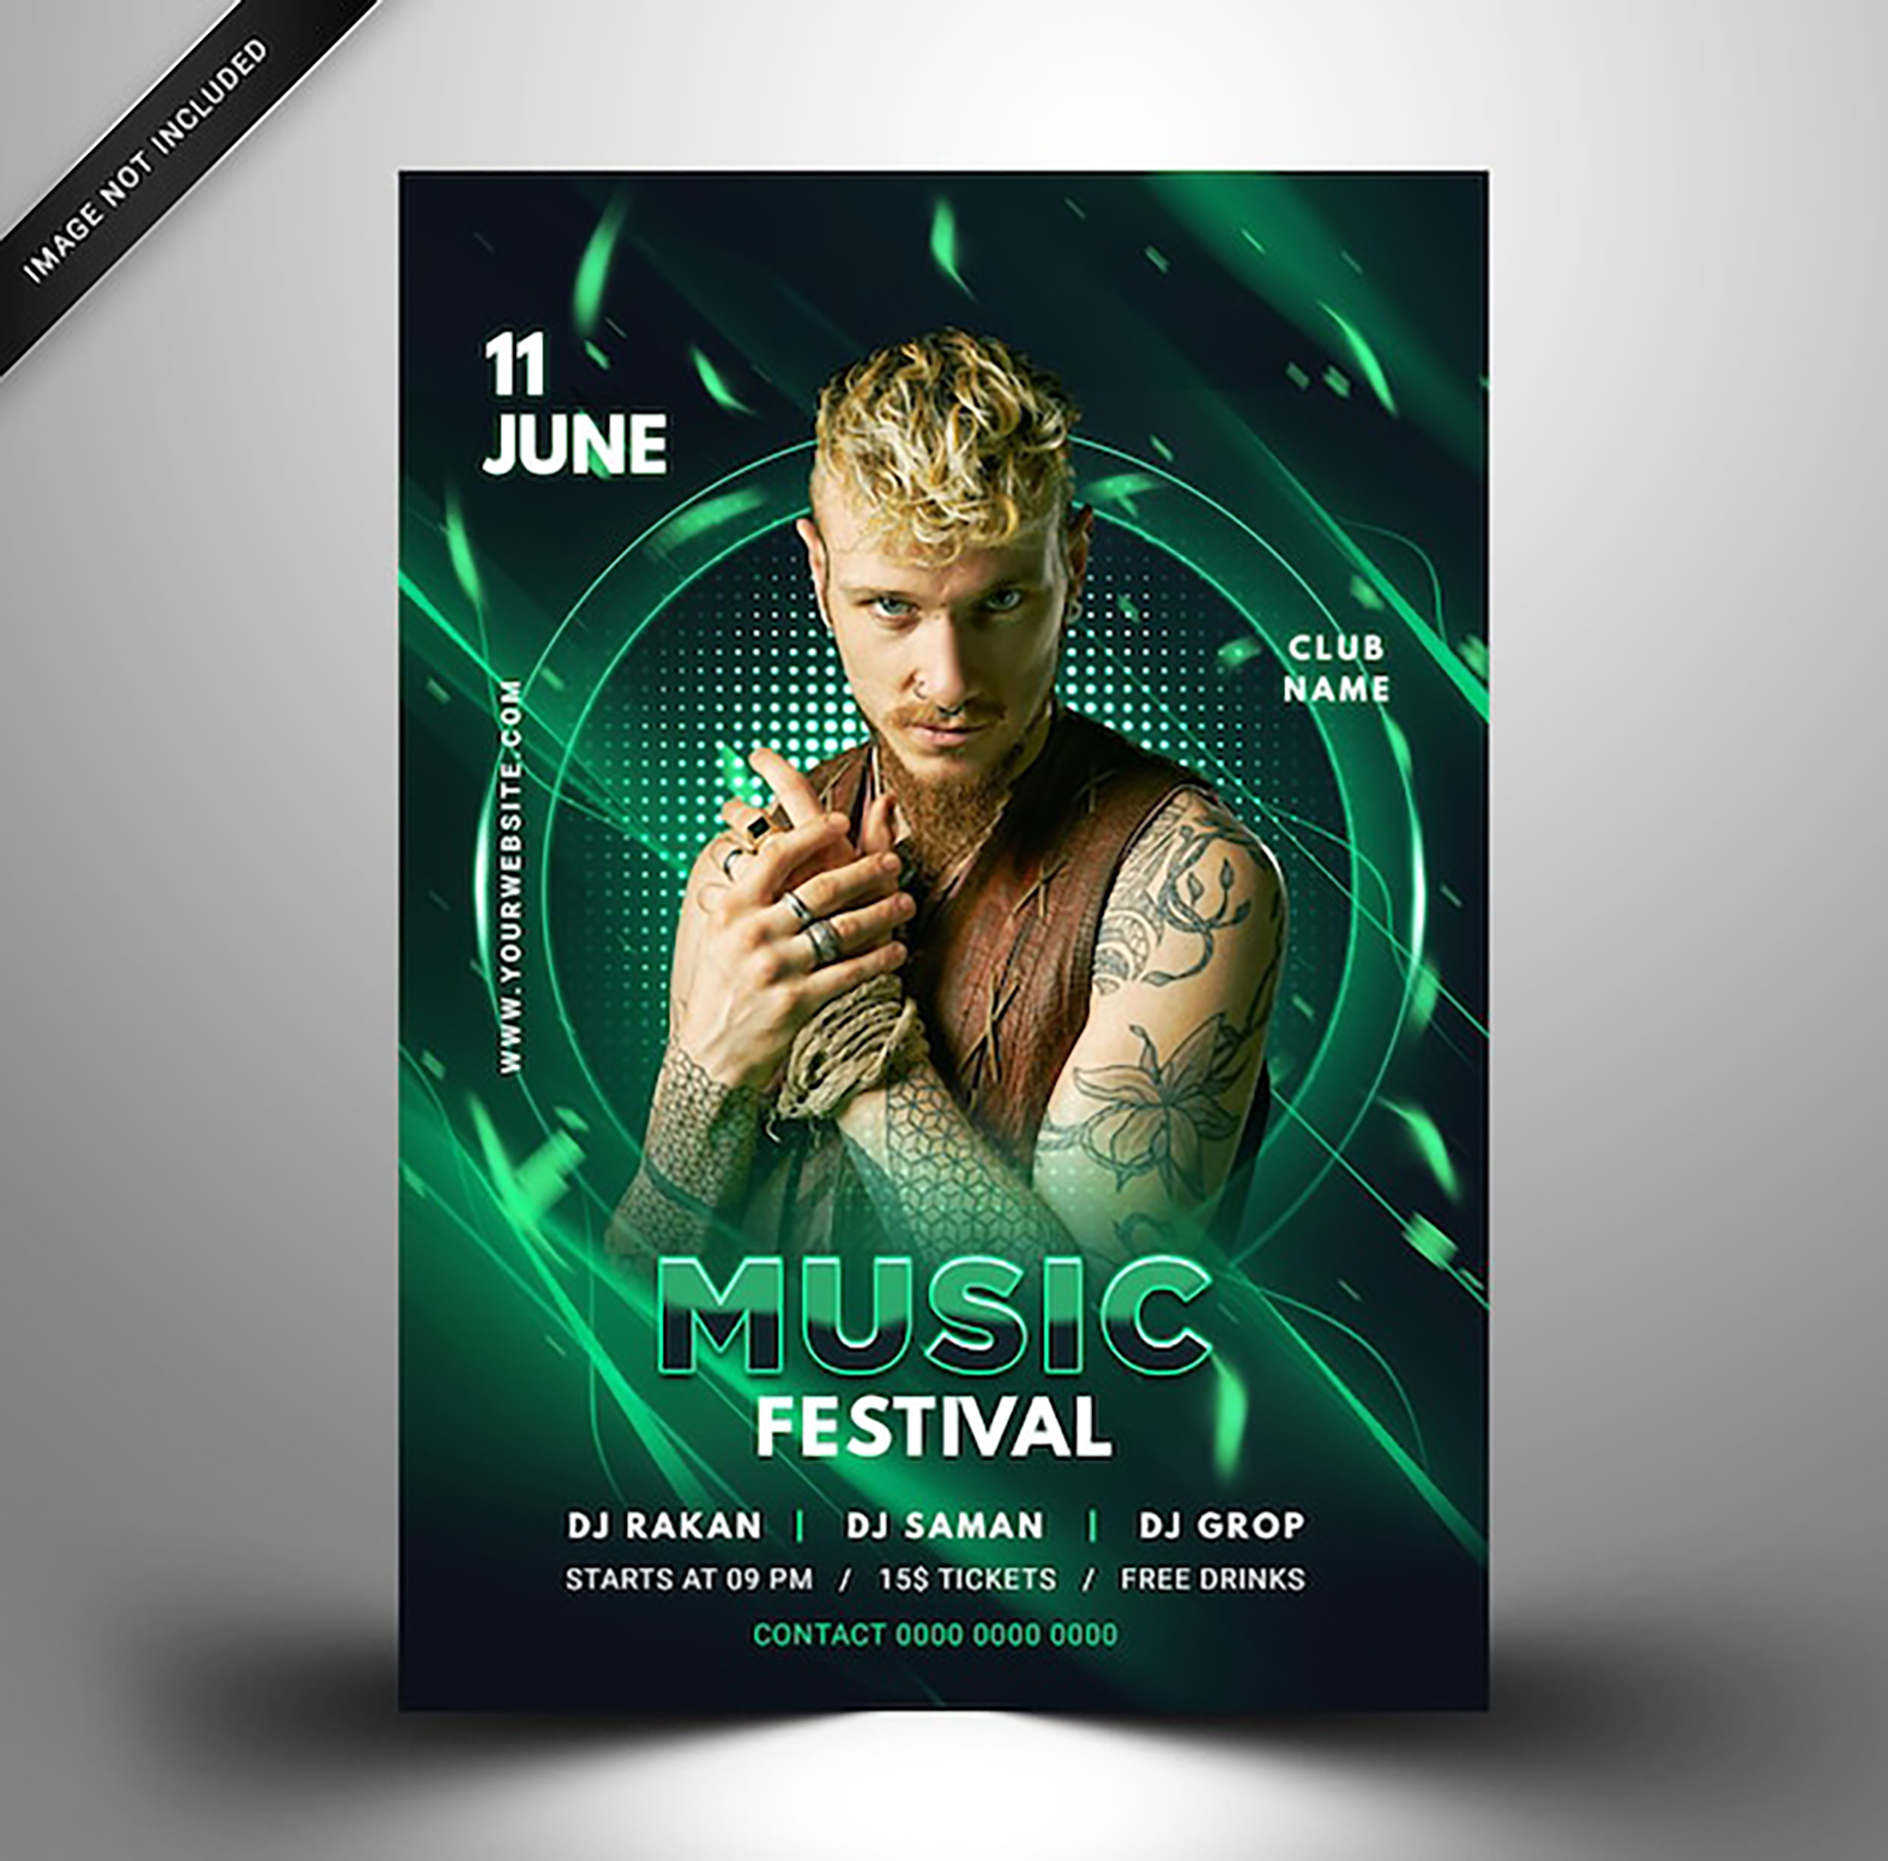 پوستر معرفی فستیوال موسیقی با تم رنگی سبز